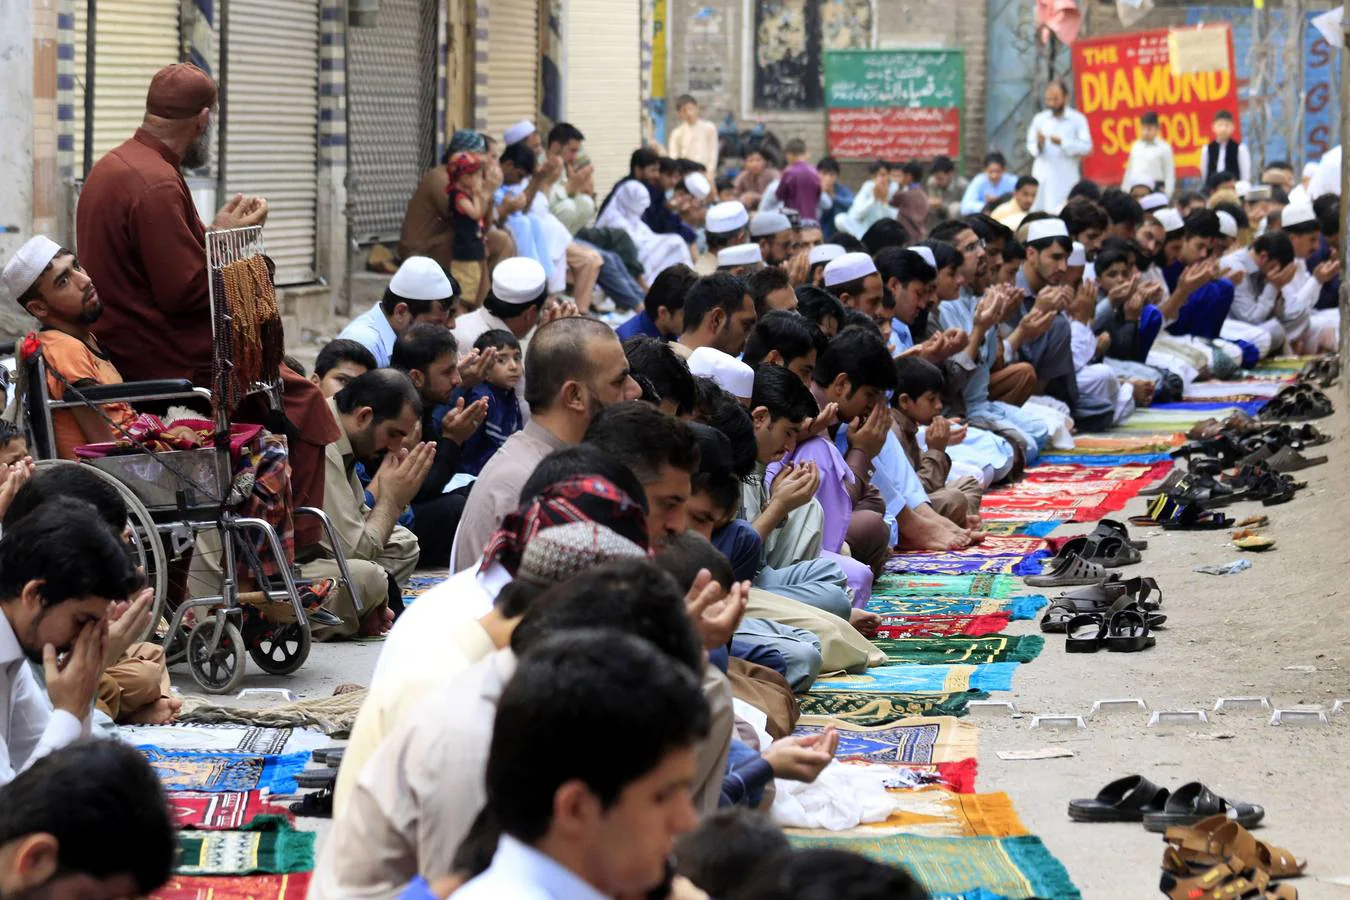 Musulmanes paquistaníes preparan vacas para ser sacrificadas con motivo de las celebraciones del Eid al Adha, o Fiesta del Sacrificio, en Karachi, Pakistán